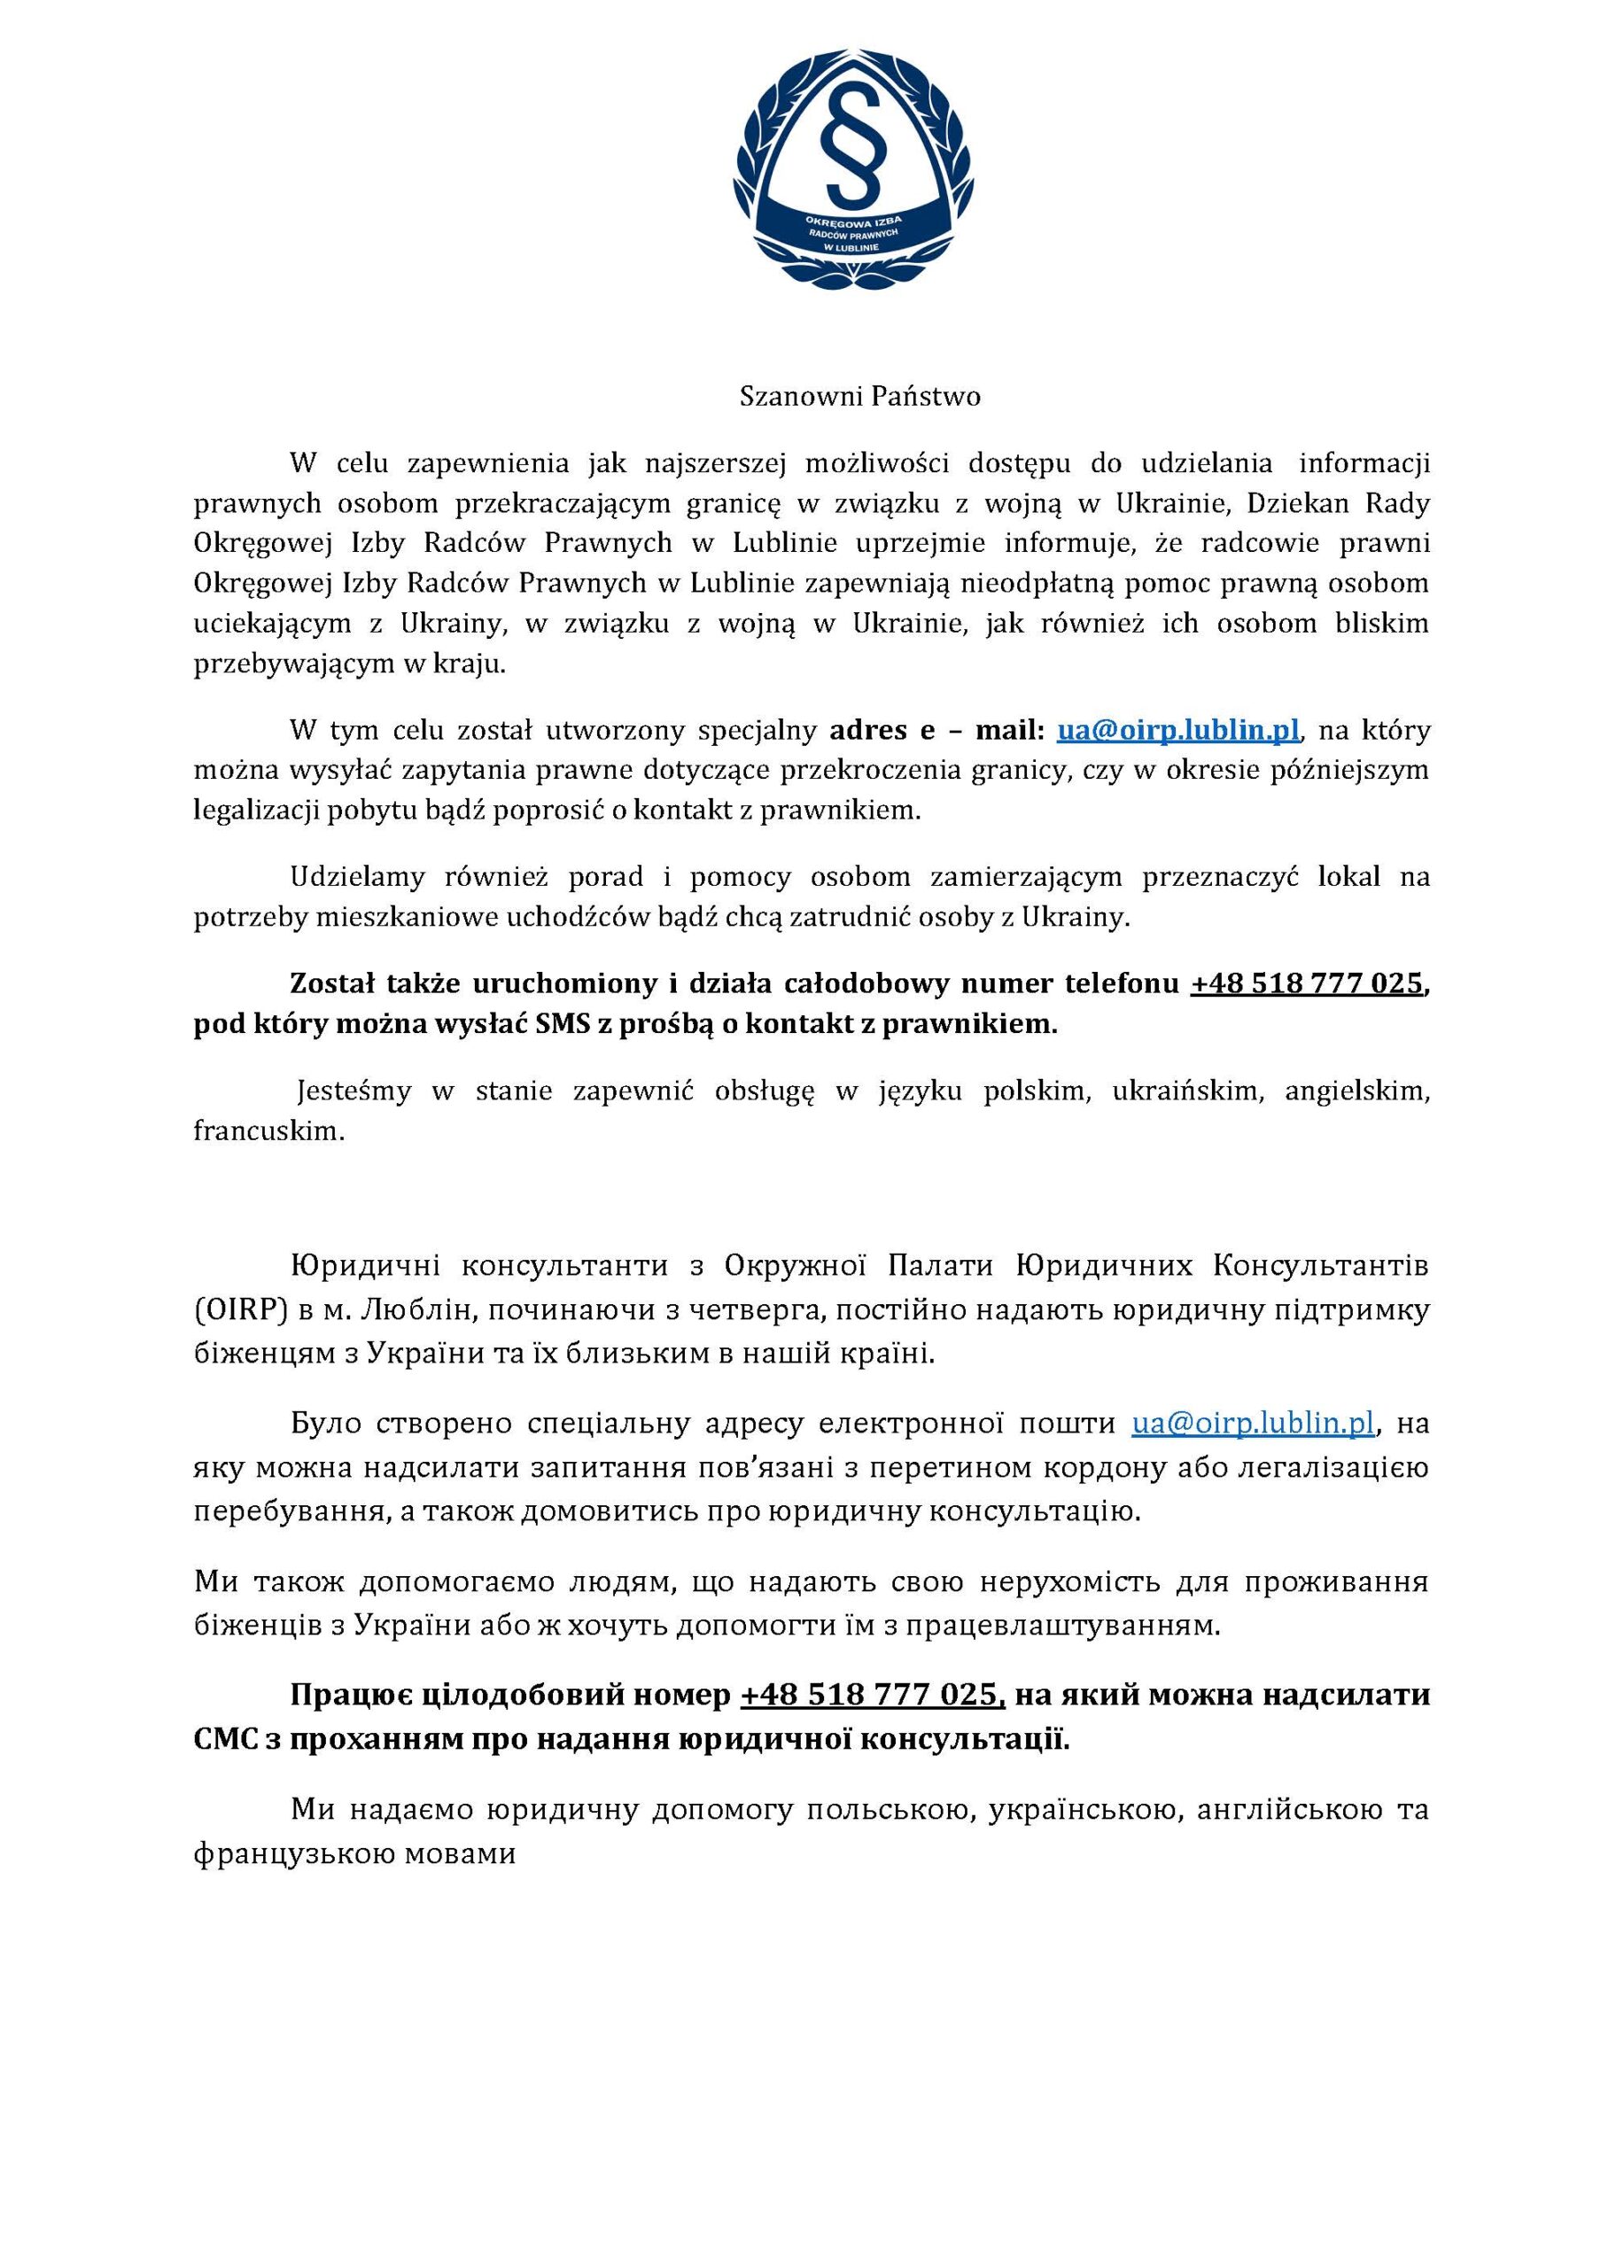 Informacja Okręgowej Izby Radców Prawnych w Lublinie dot. udzielania nieodpłatnej pomocy prawnej uchodźcom